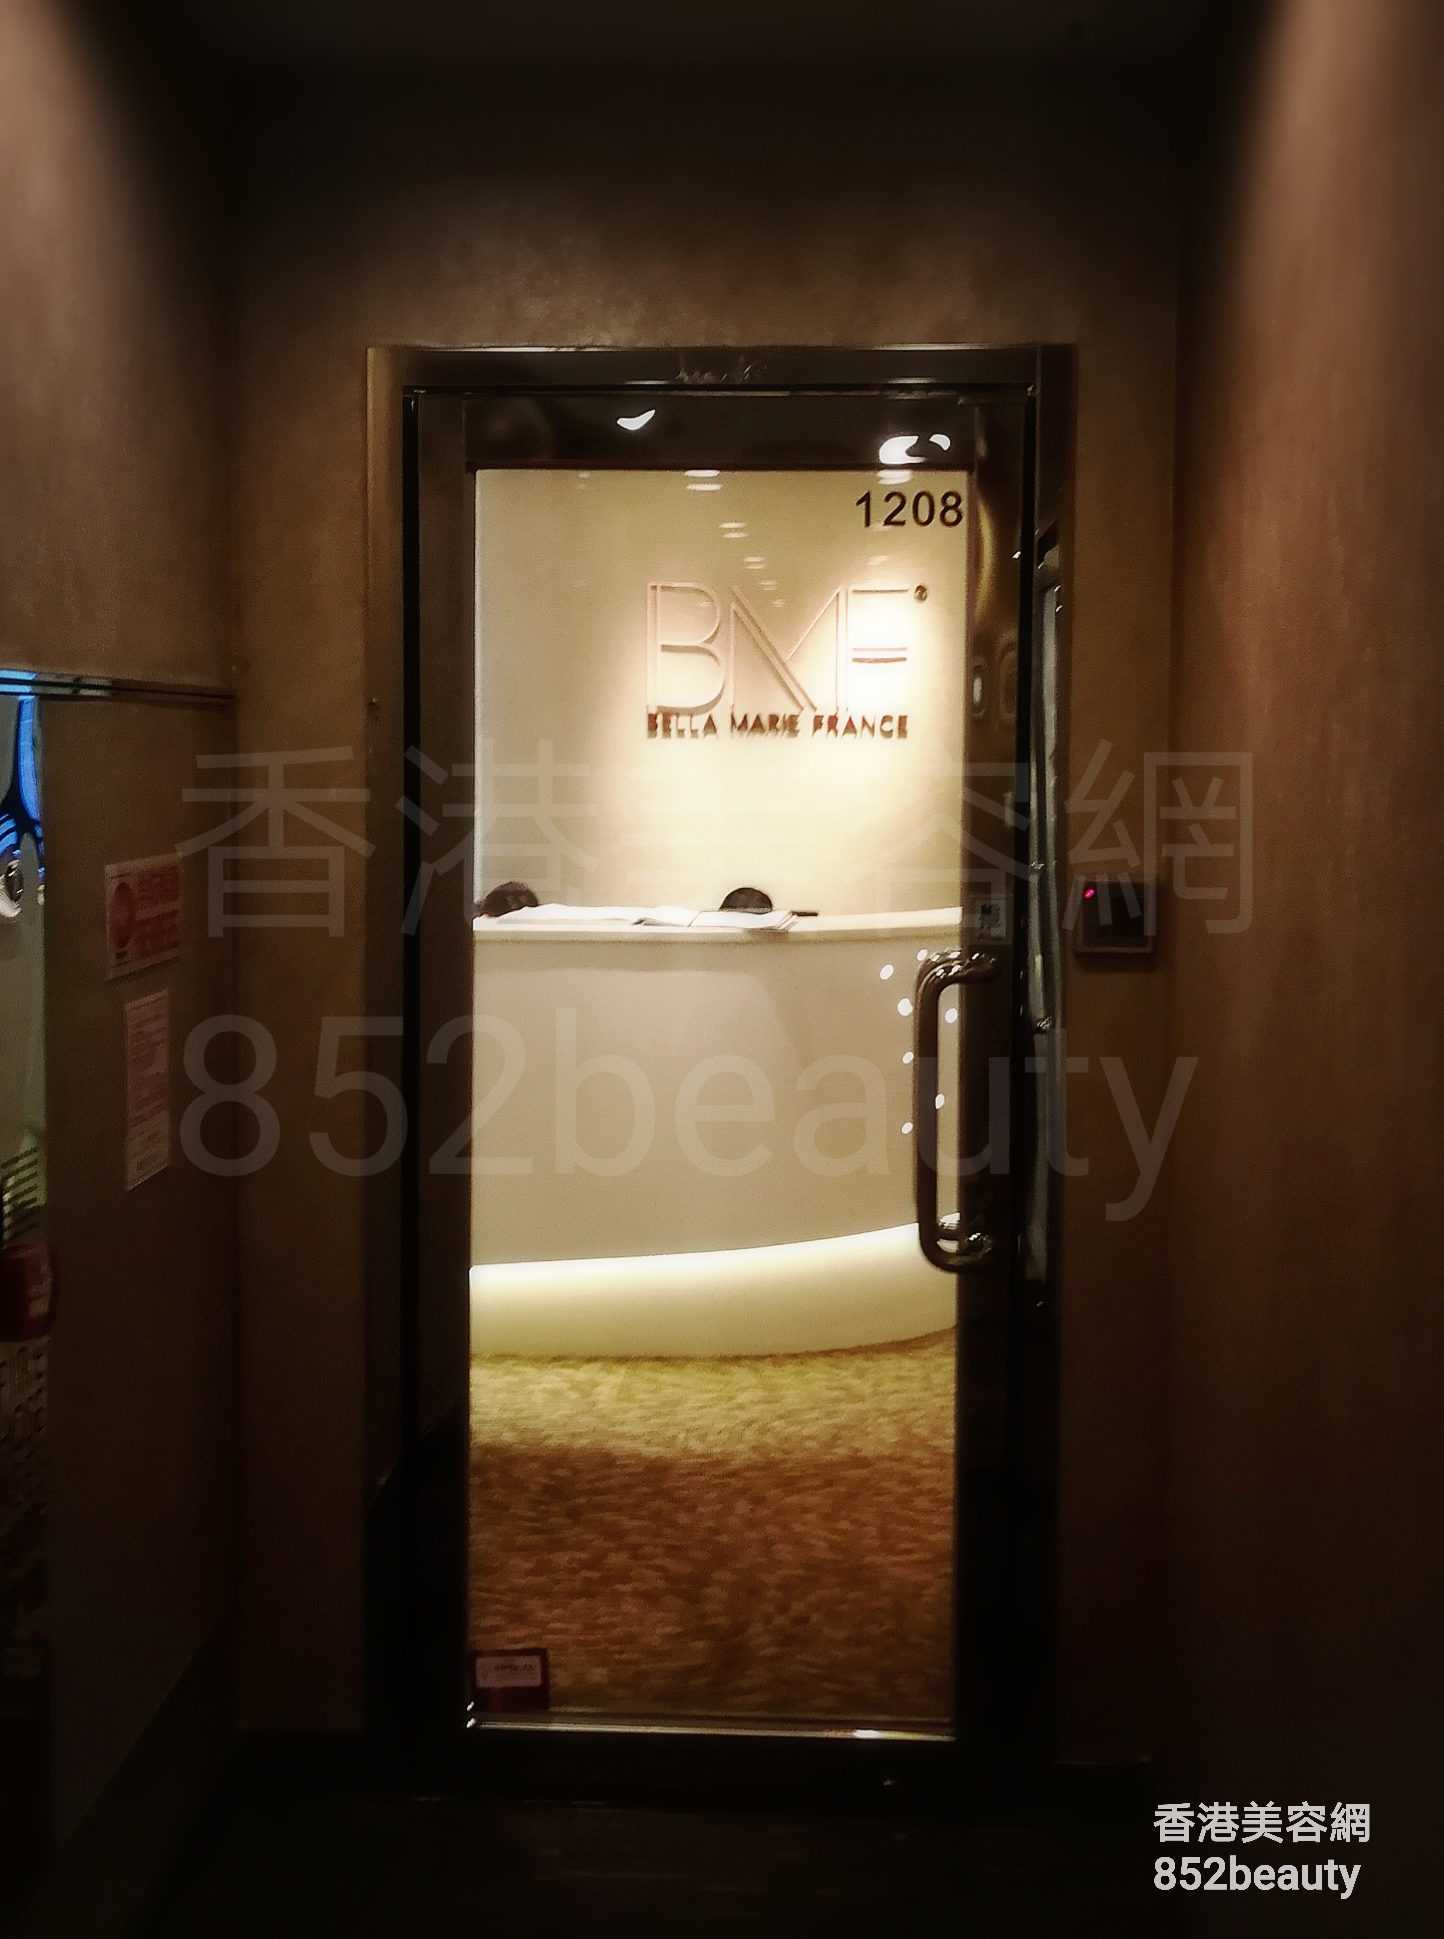 美容院 Beauty Salon 集团OASIS Medical (沙田店) @ 香港美容网 HK Beauty Salon